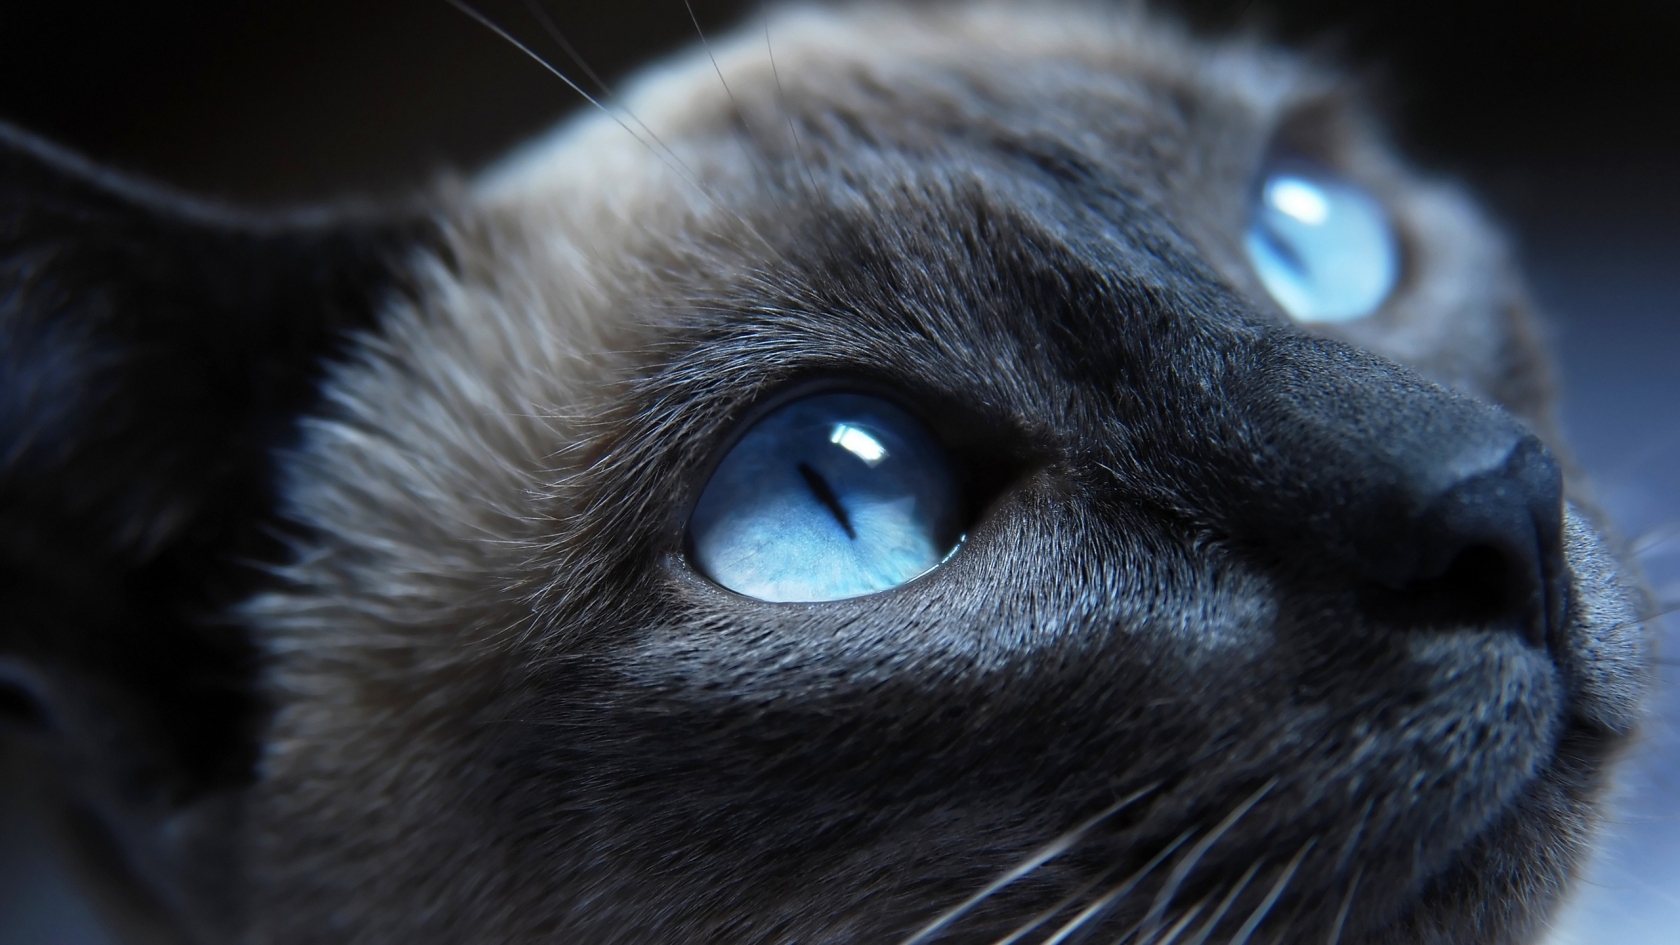 Cat Blue Eyes for 1680 x 945 HDTV resolution